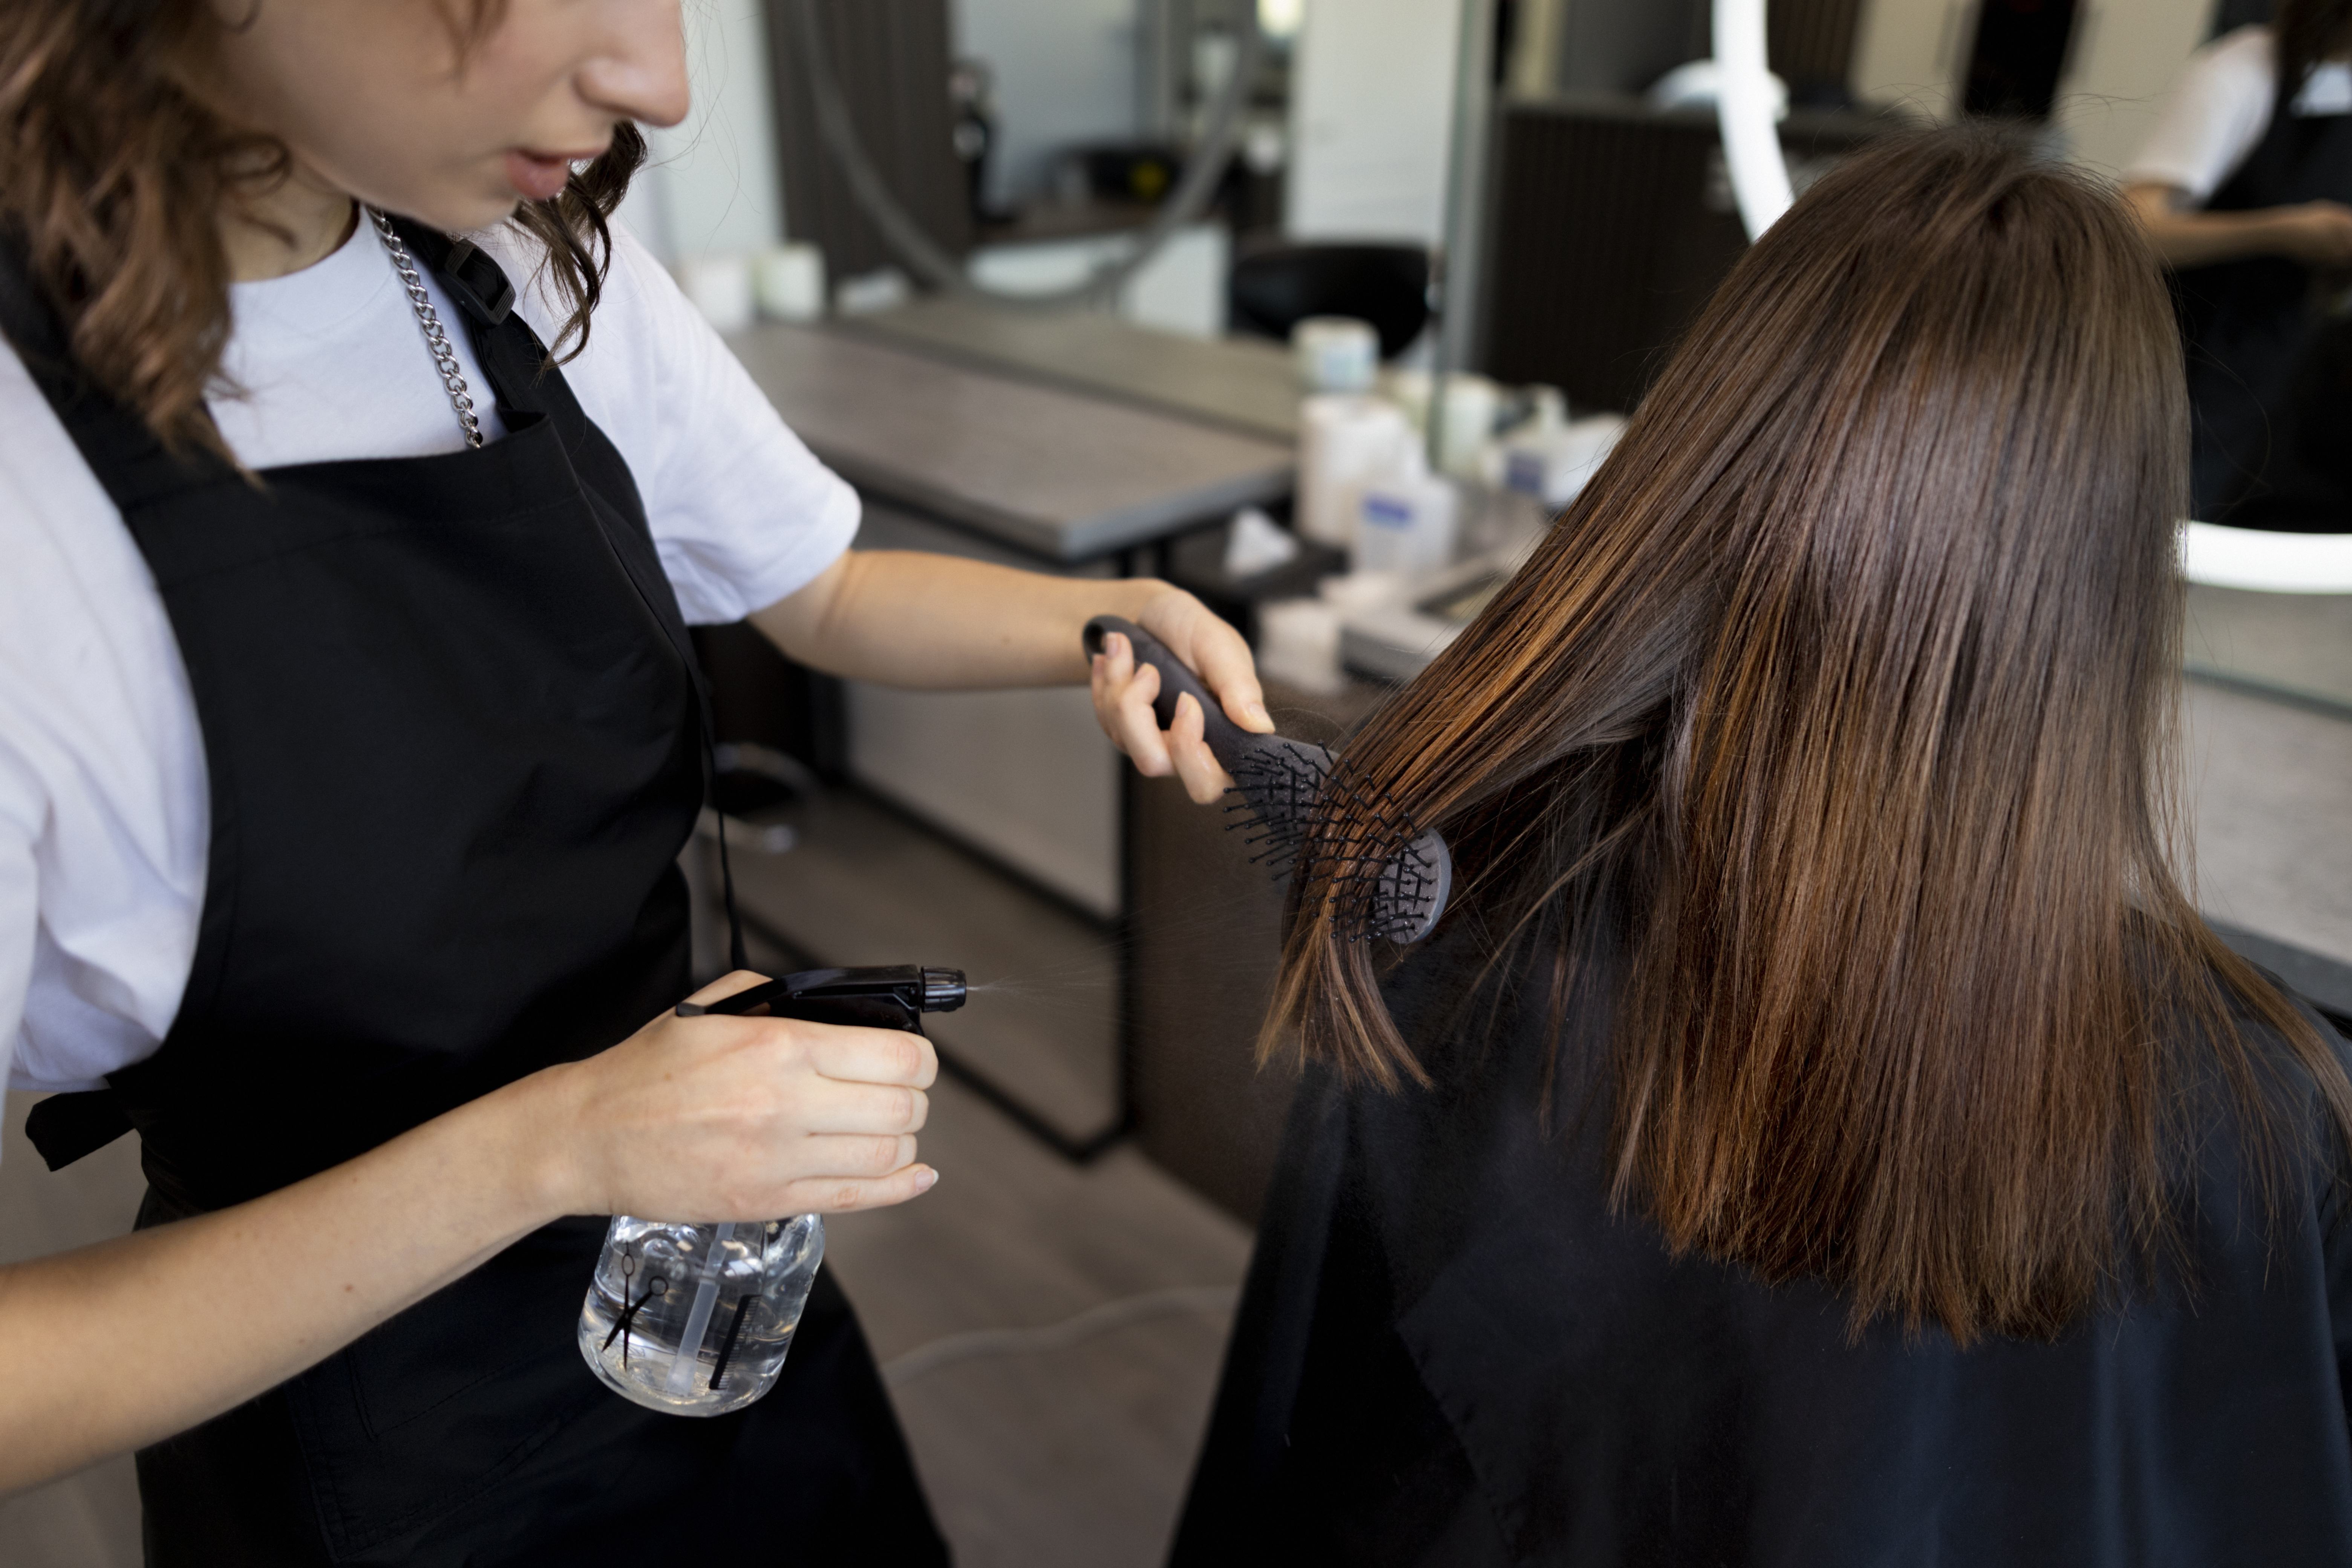 Как быстрее отрастить длинные волосы: 7 полезных советов для будущей Рапунцель